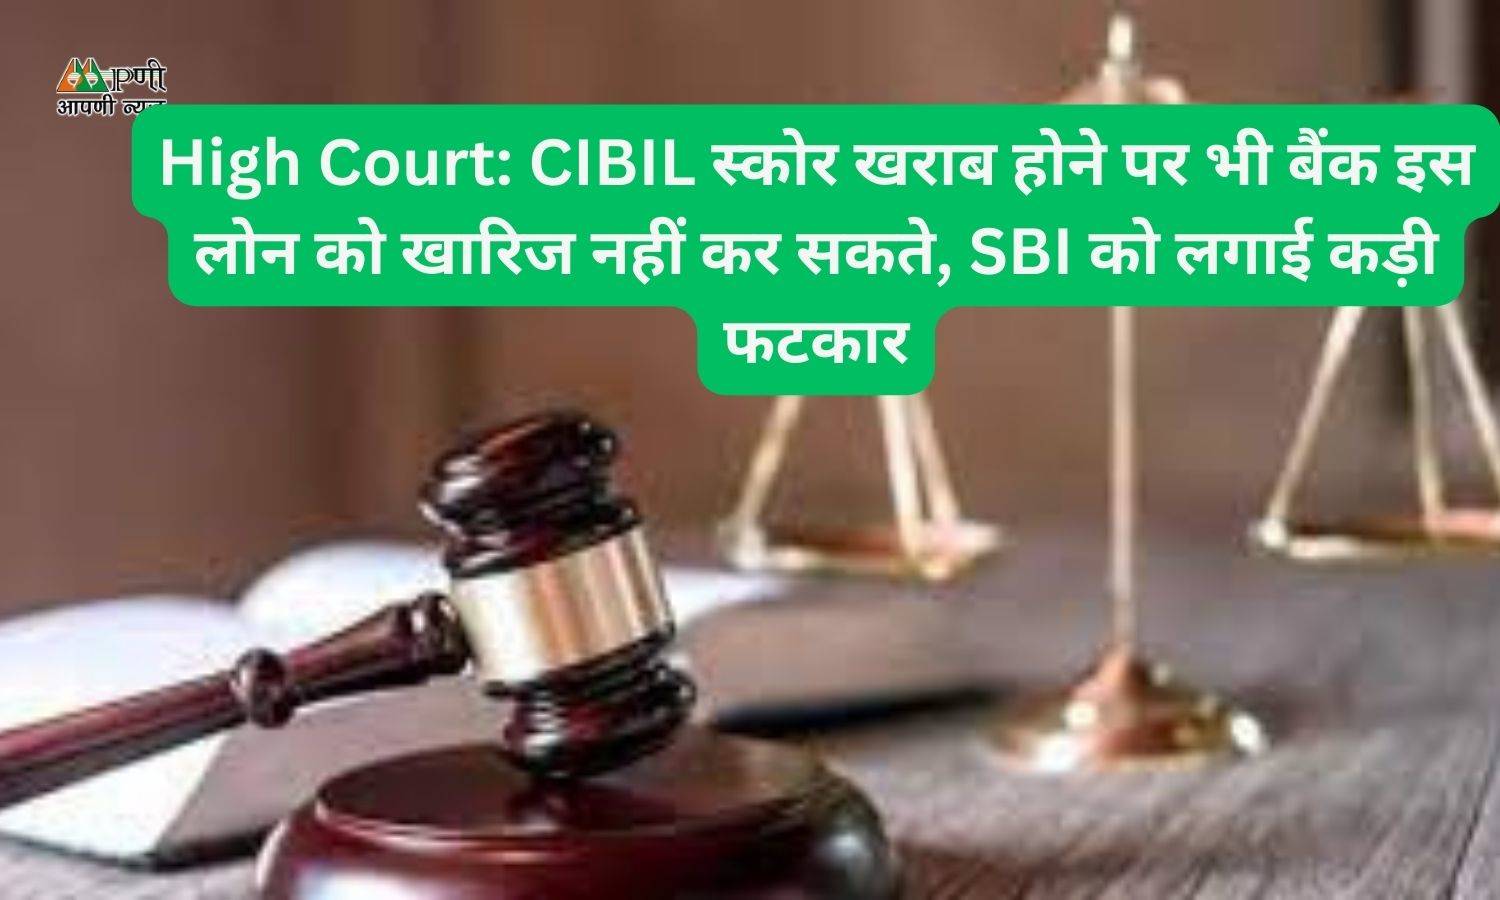 High Court: CIBIL स्कोर खराब होने पर भी बैंक इस लोन को खारिज नहीं कर सकते, SBI को लगाई कड़ी फटकार